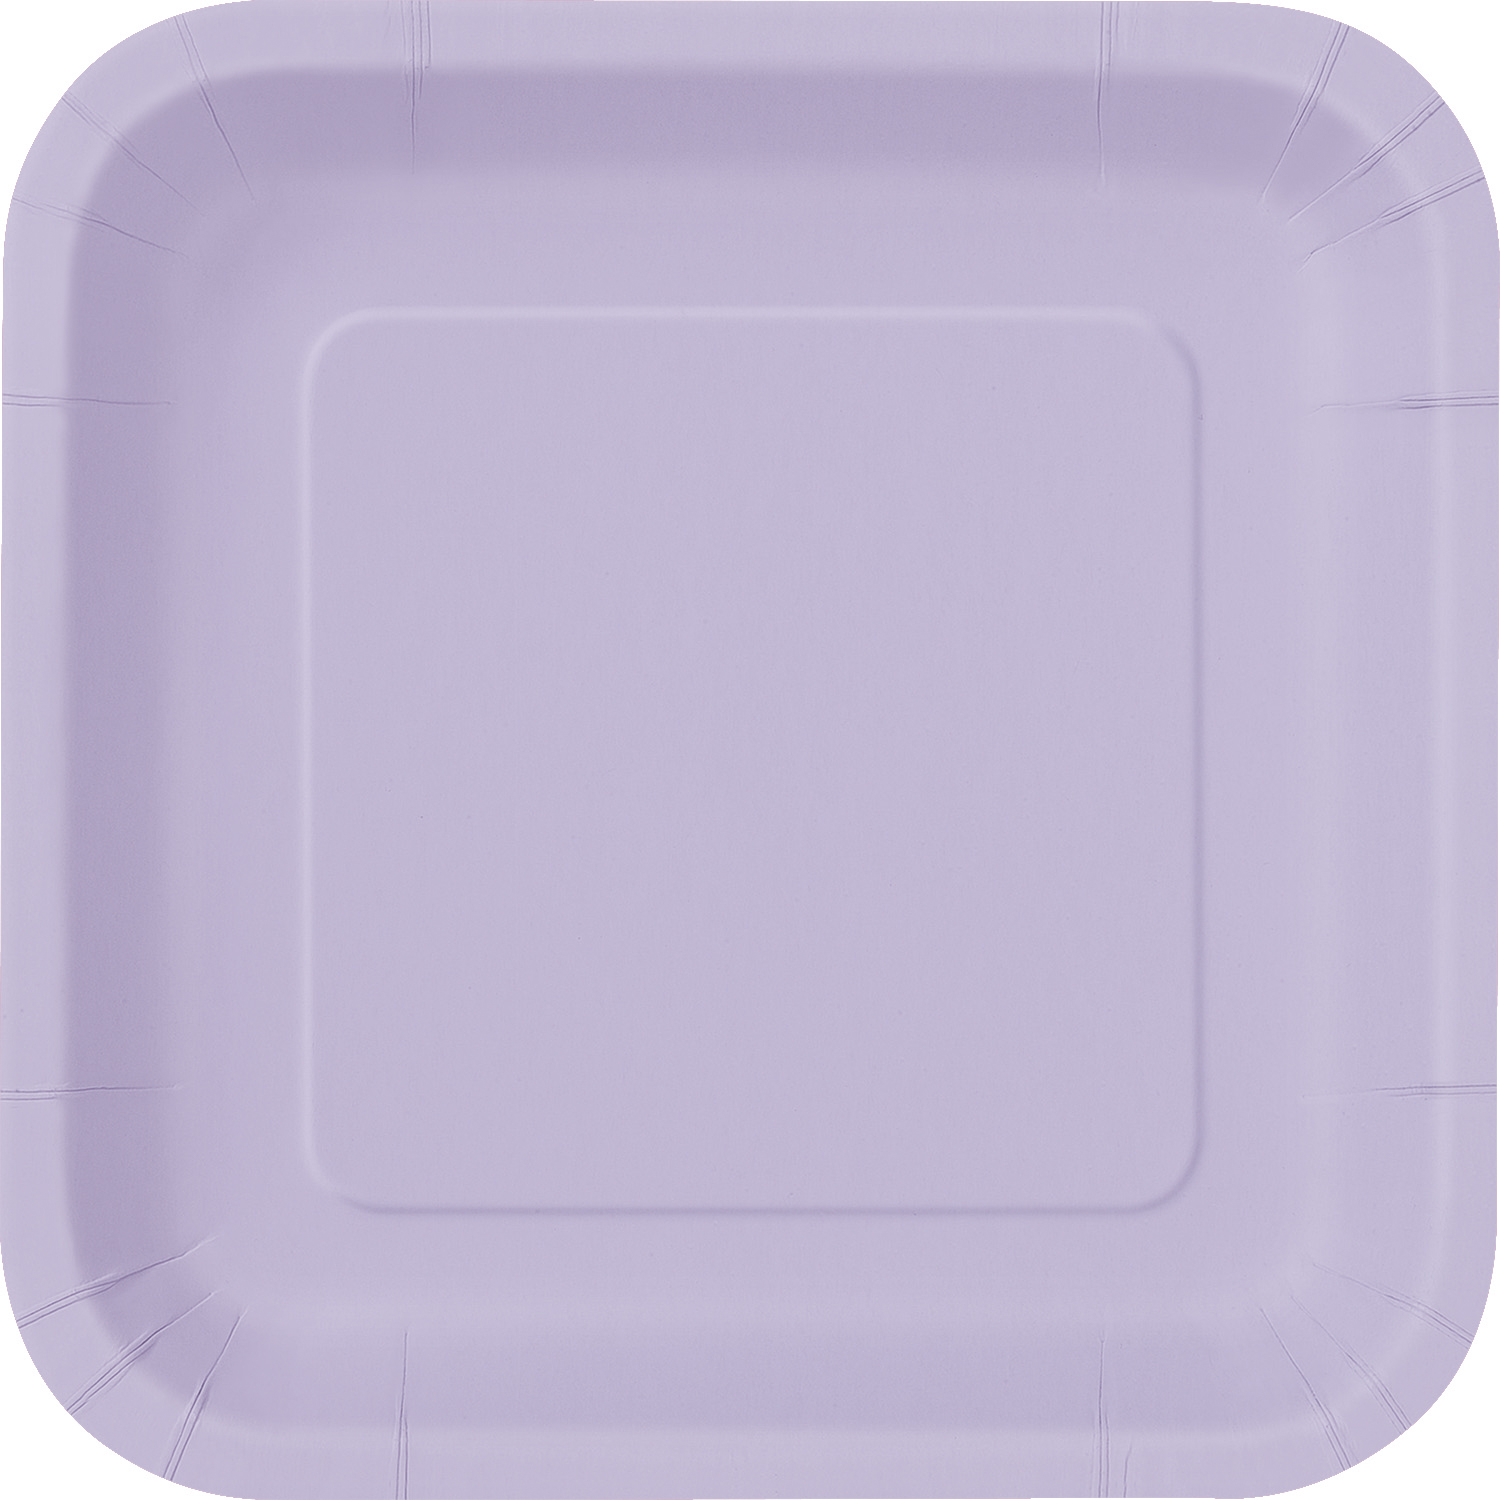 Lavender Square Plates 9" (14pk)